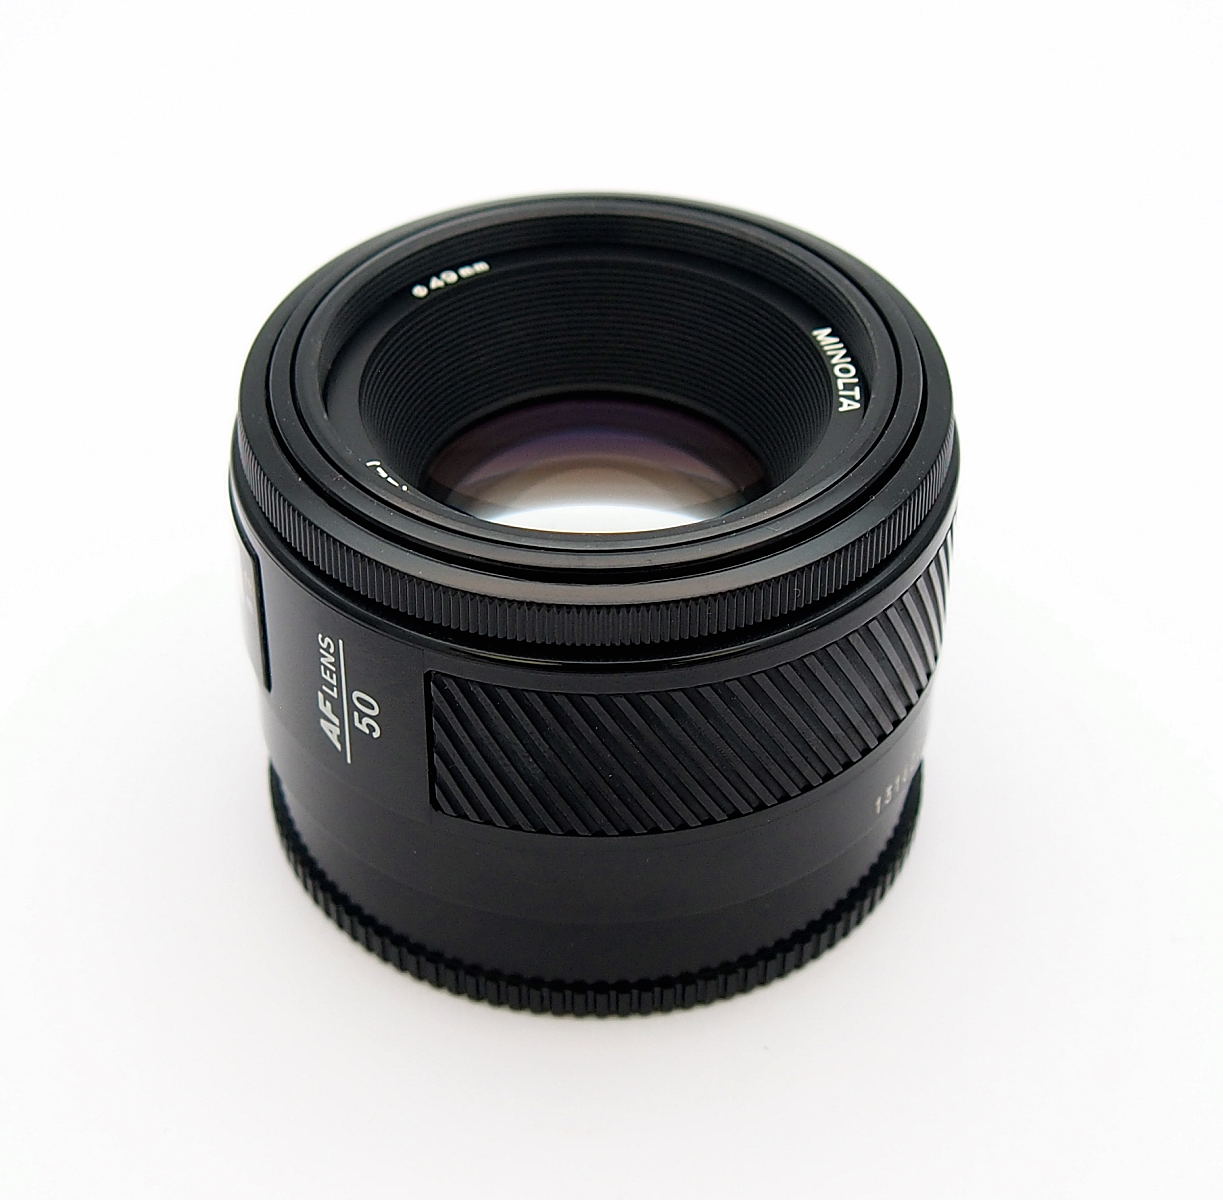 Minolta 50mm F1.7 Autofocus Full Frame Lens #9722